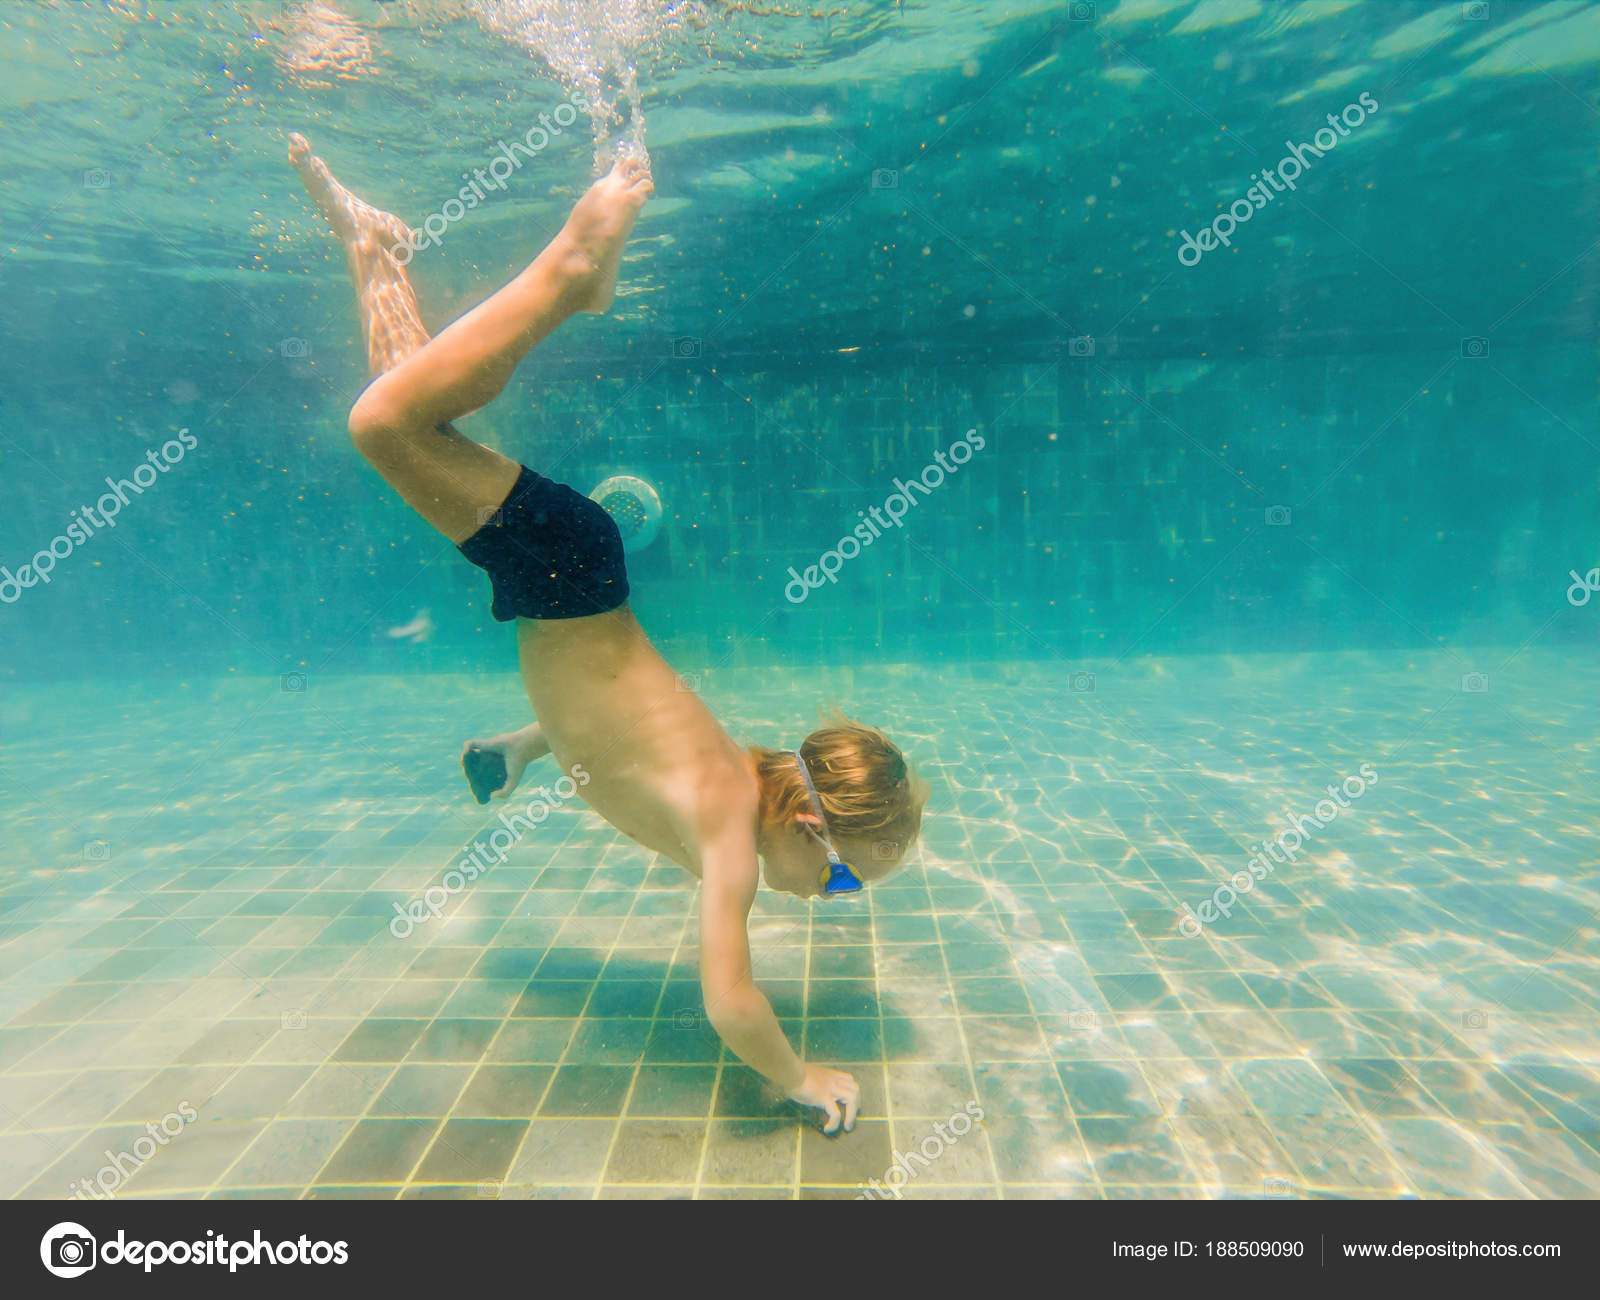 Resultado de imagem para menino nadando debaixo de Ã¡gua